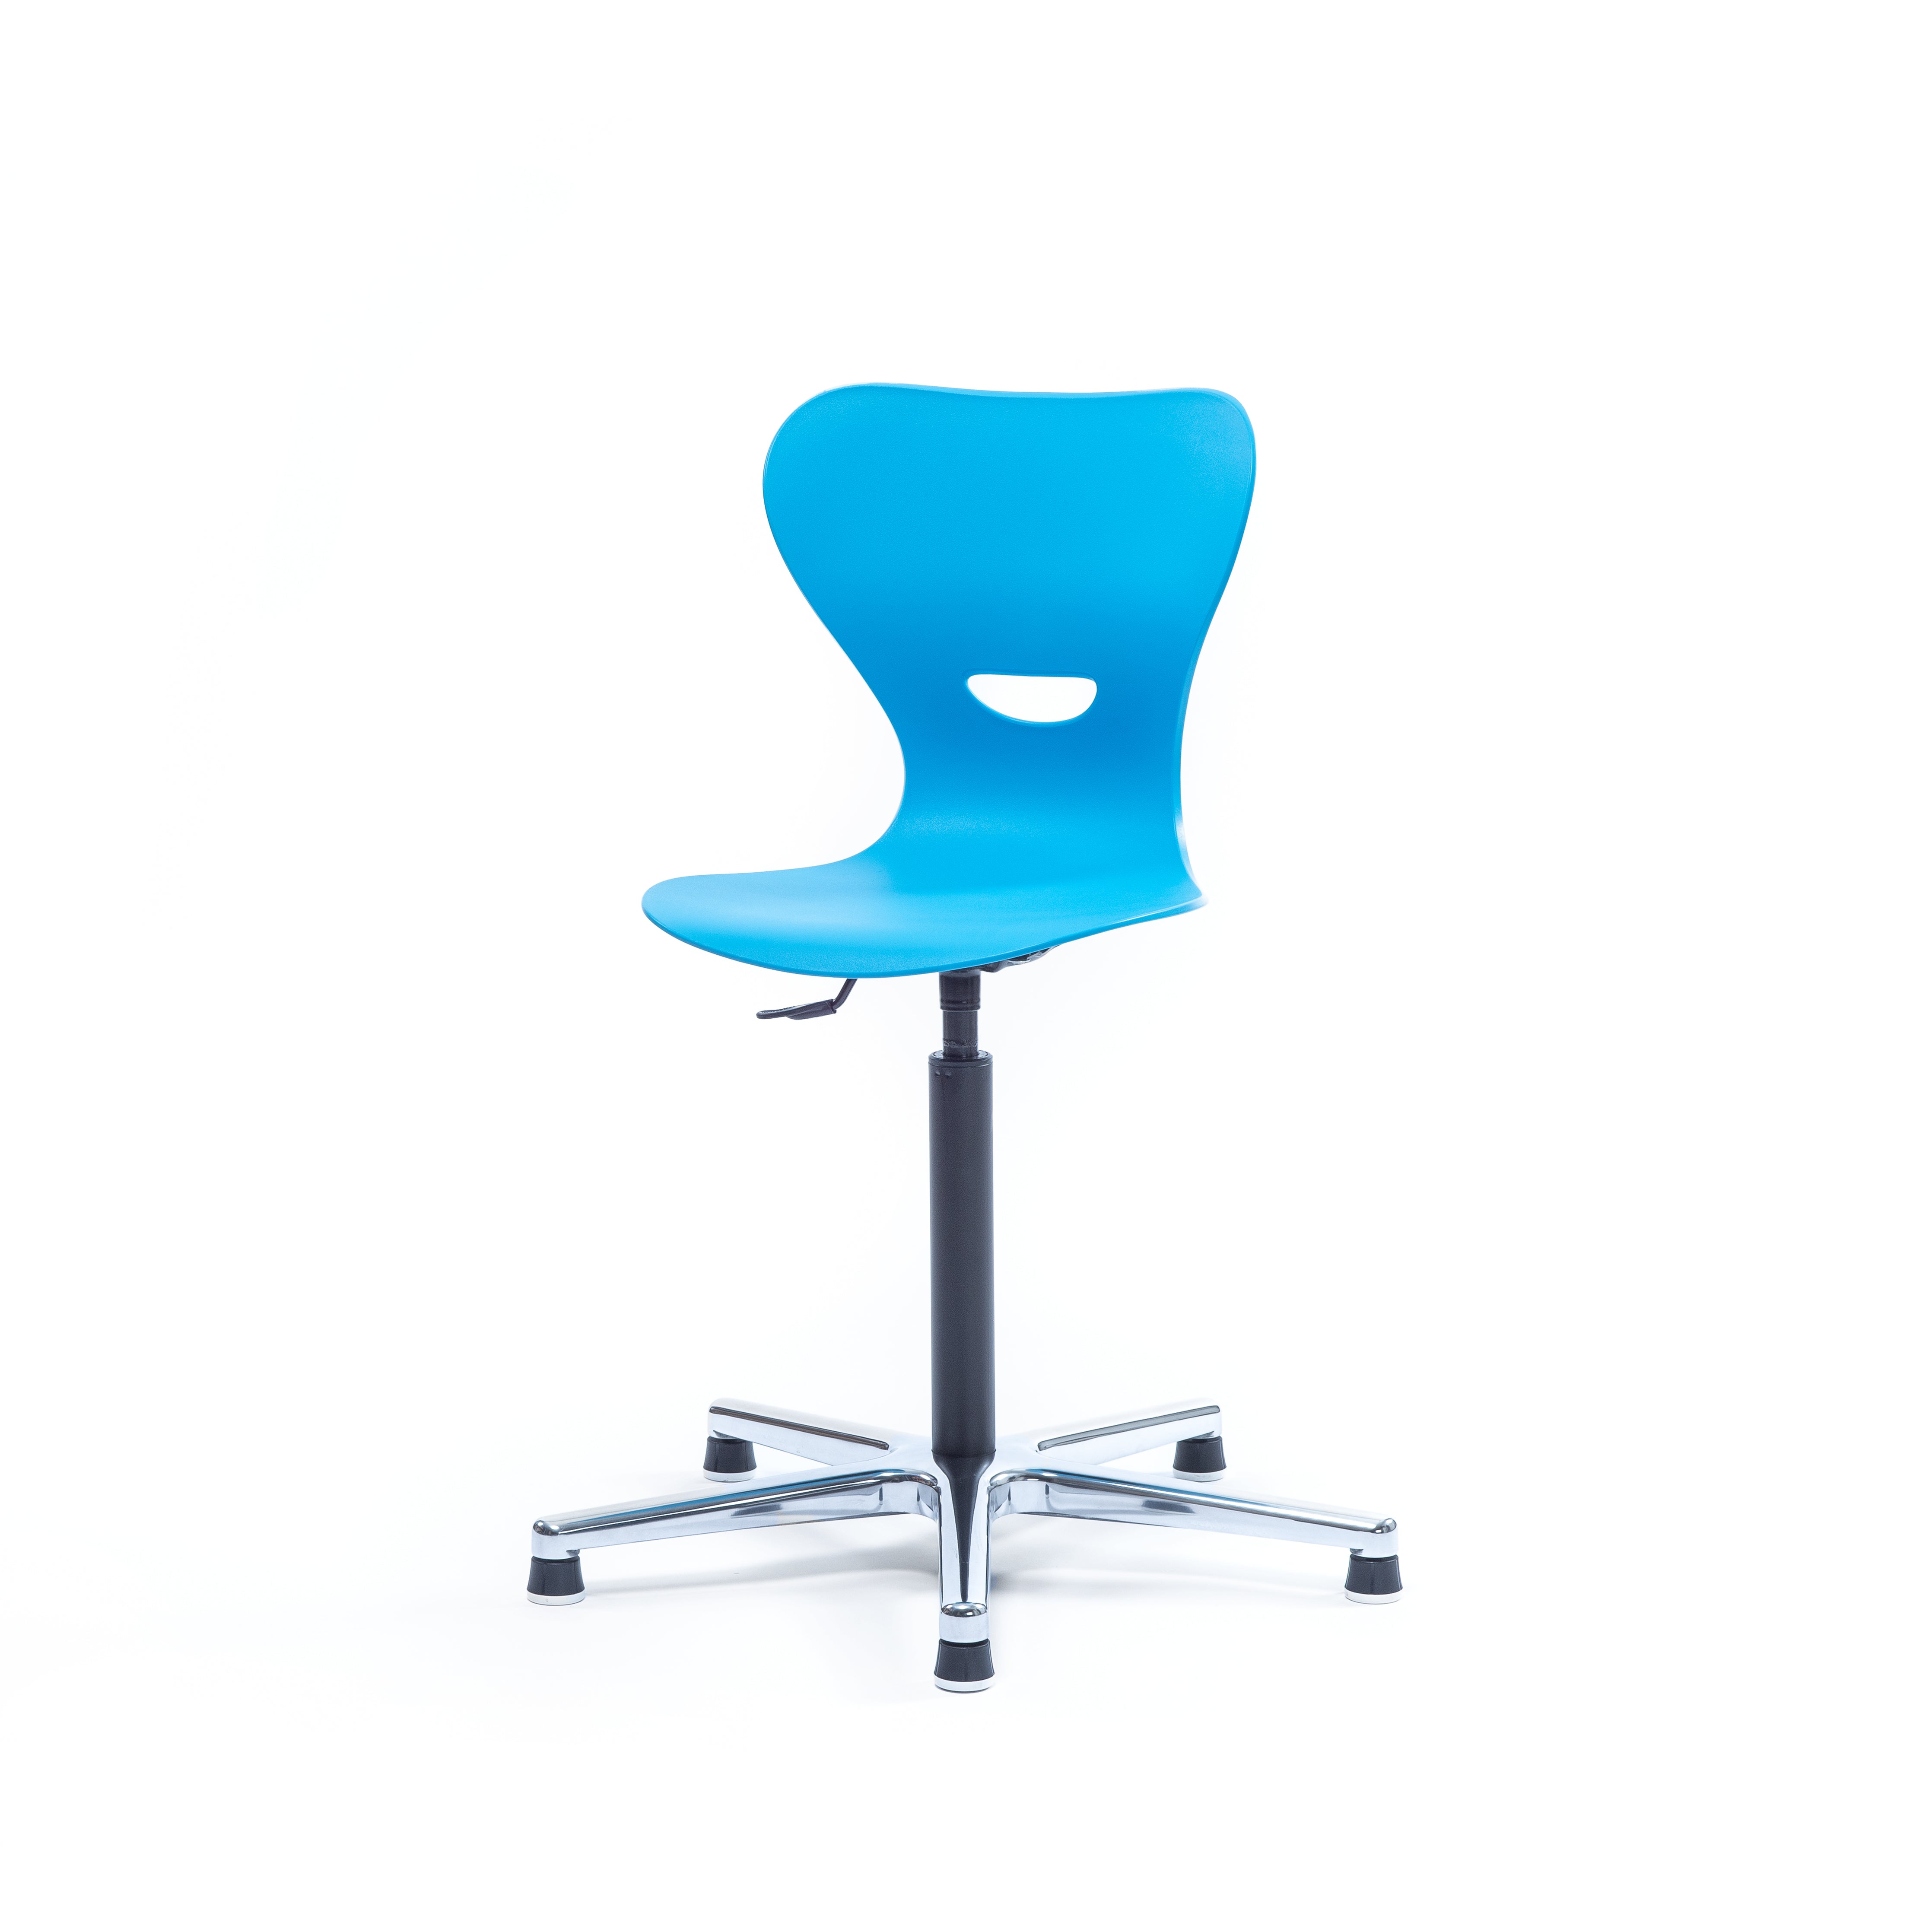 Schülerstuhl höhenverstellbar seitlicher Blick mit blauer Sitzschale aus Kunststoff und Griffloch